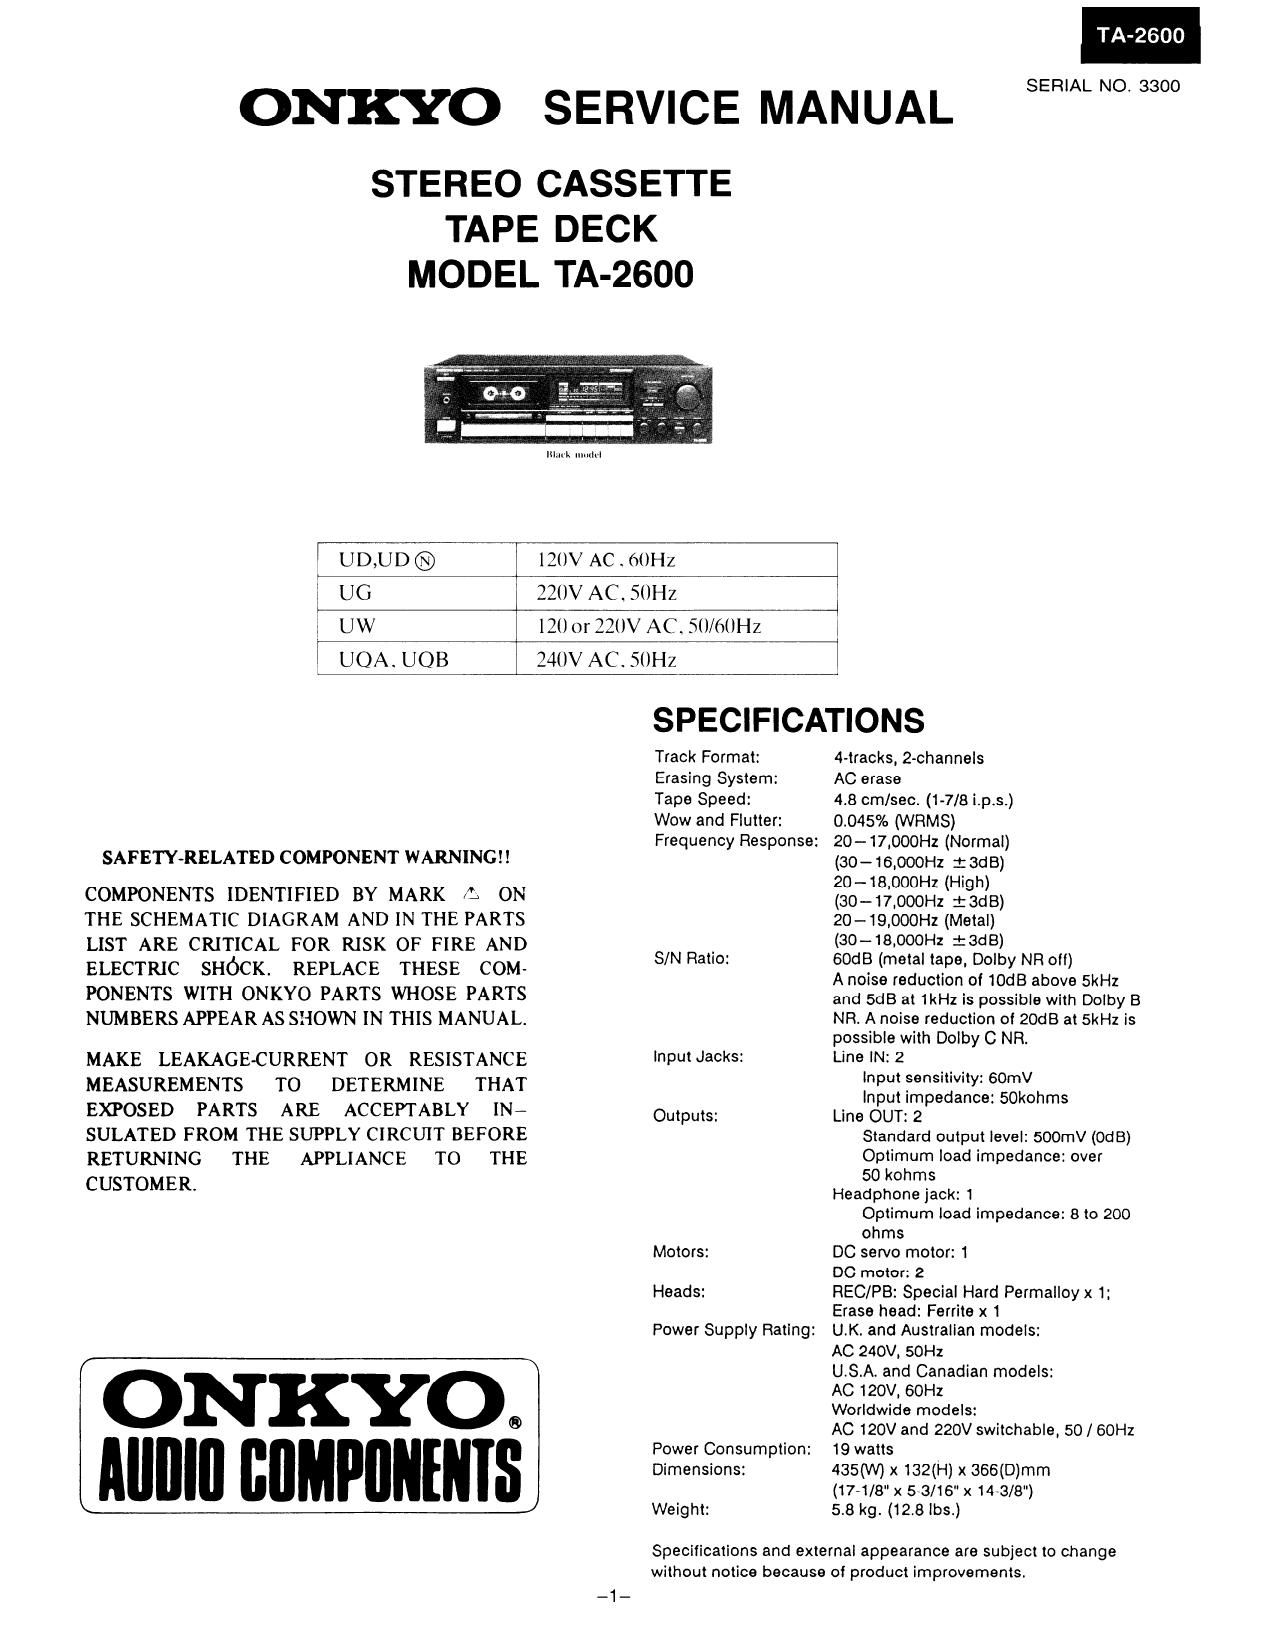 Onkyo TA 2600 Service Manual